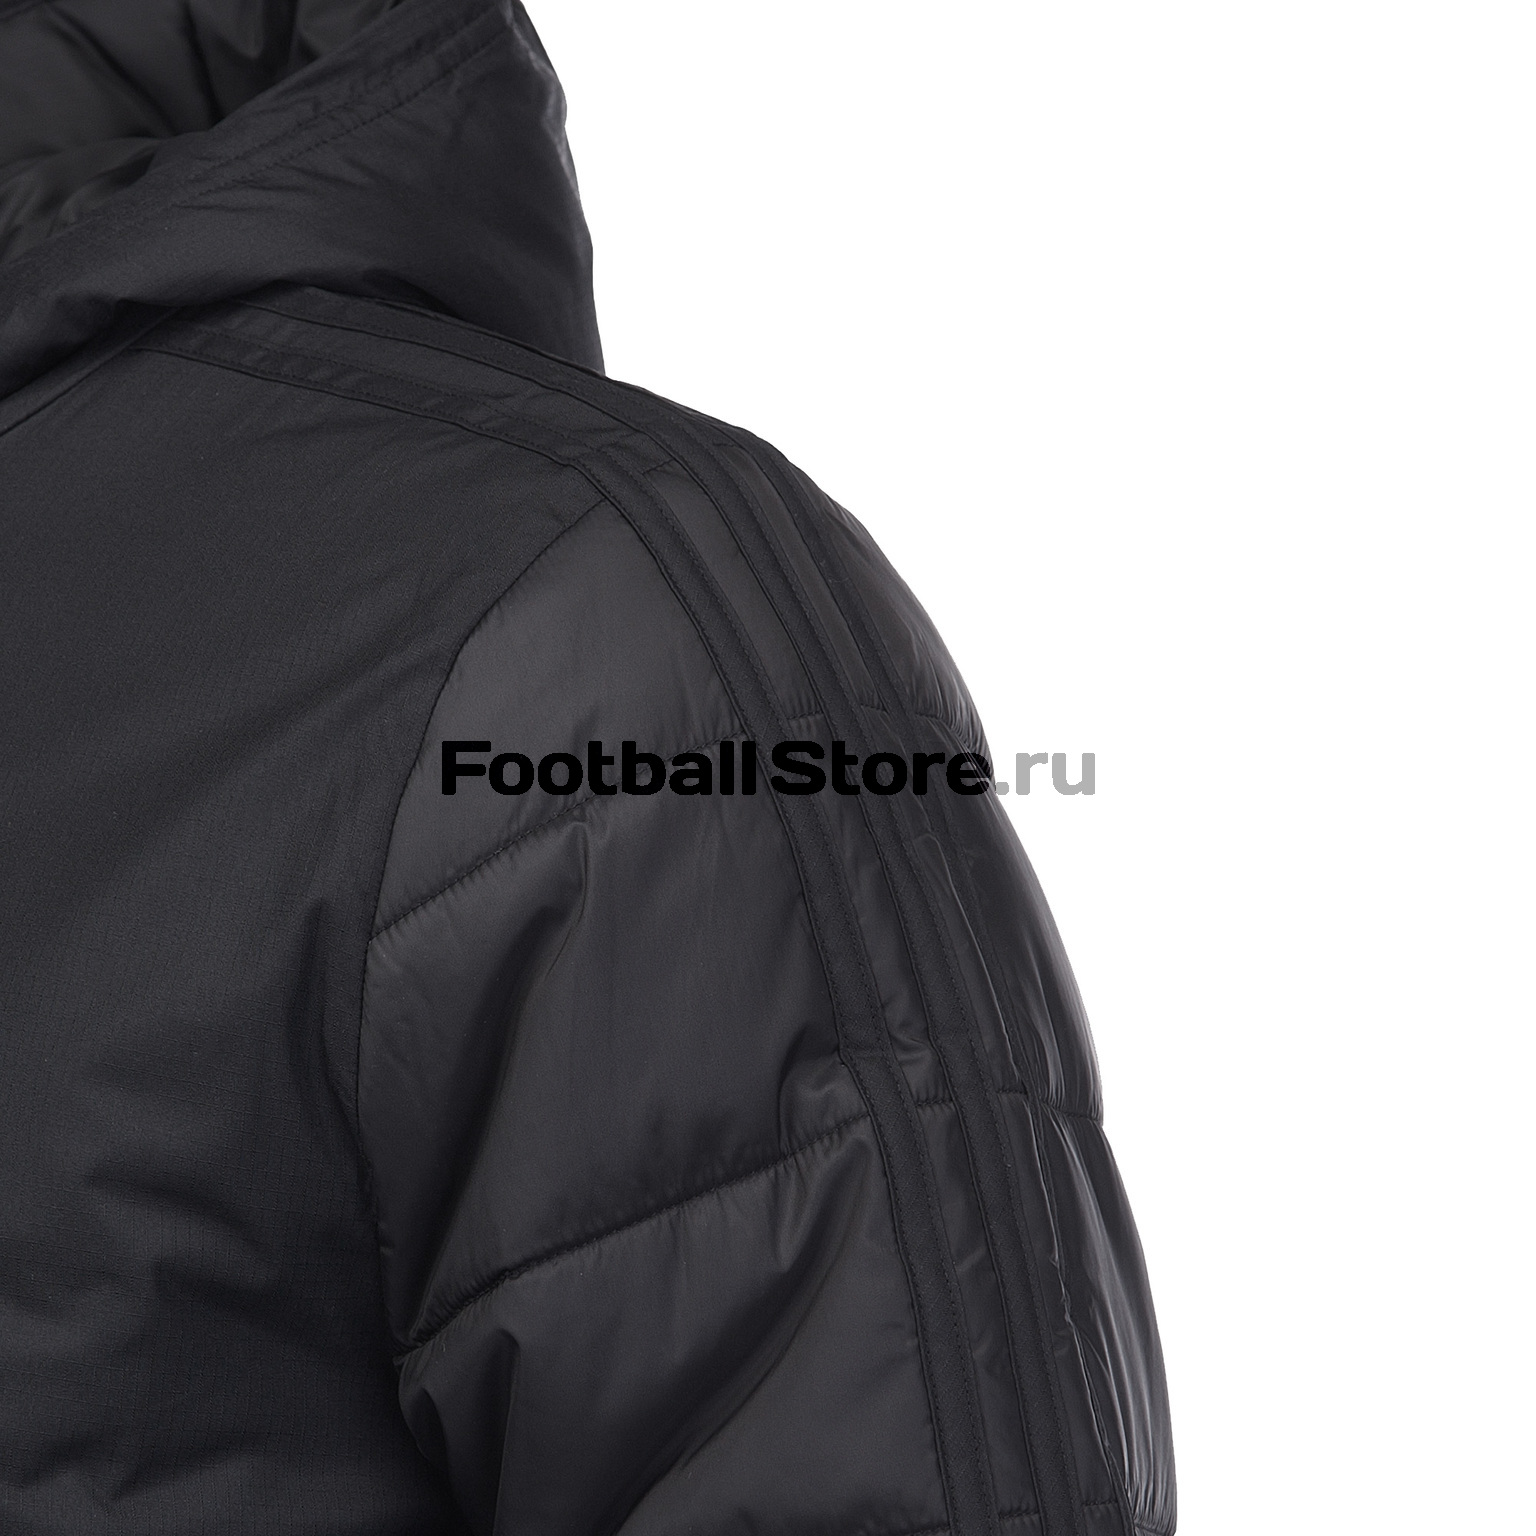 Куртка подростковая утепленная Adidas Winter BQ6598